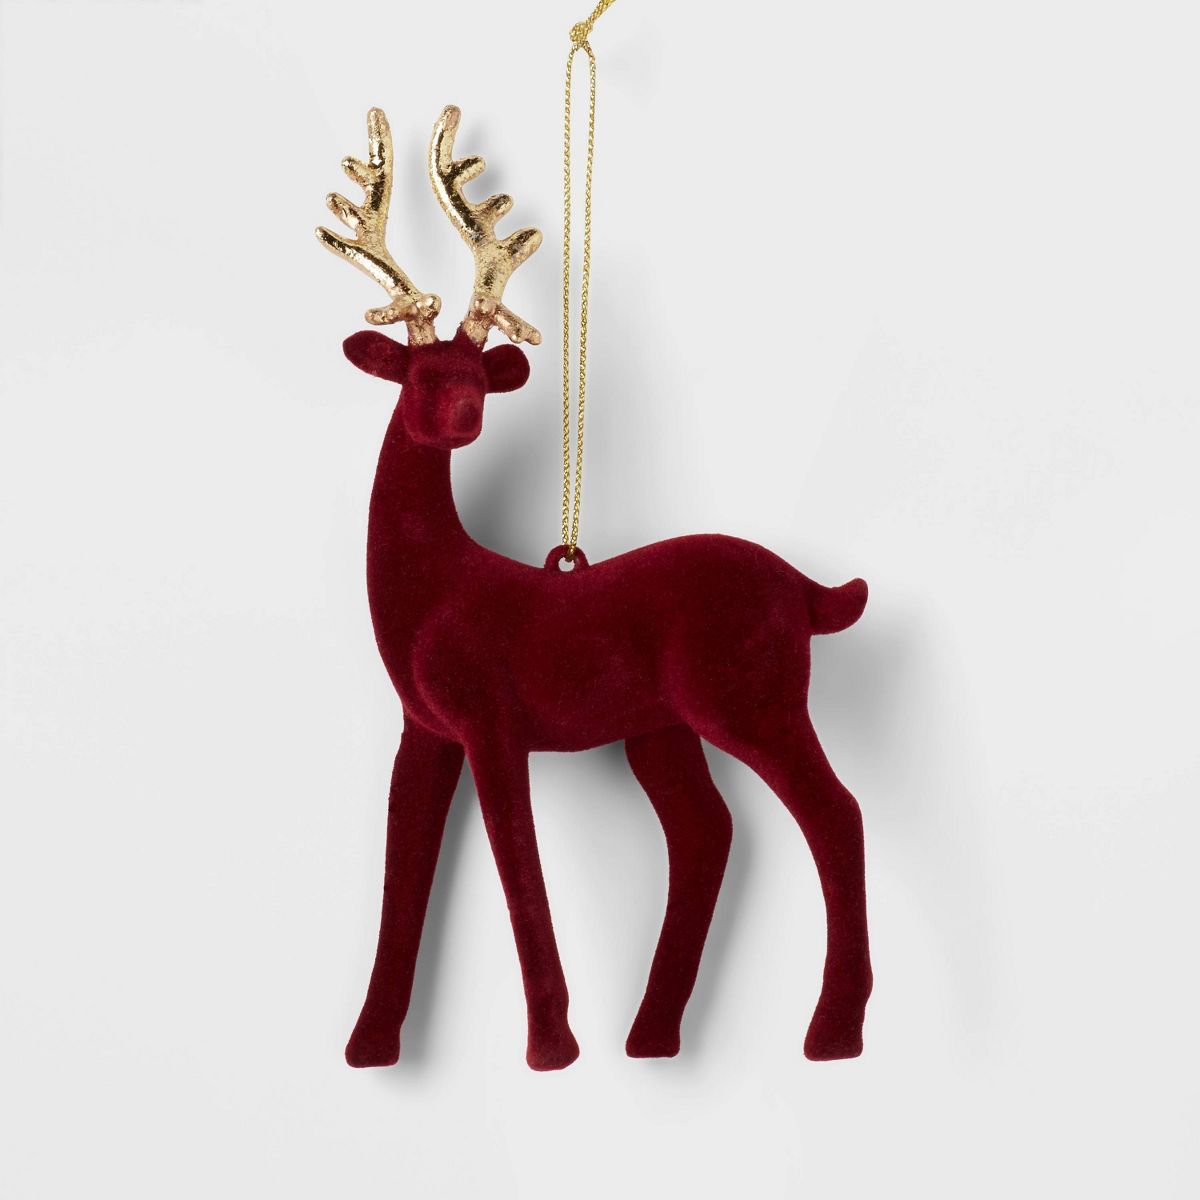 Flocked Deer with Gold Antlers Christmas Tree Ornament - Wondershop™ | Target